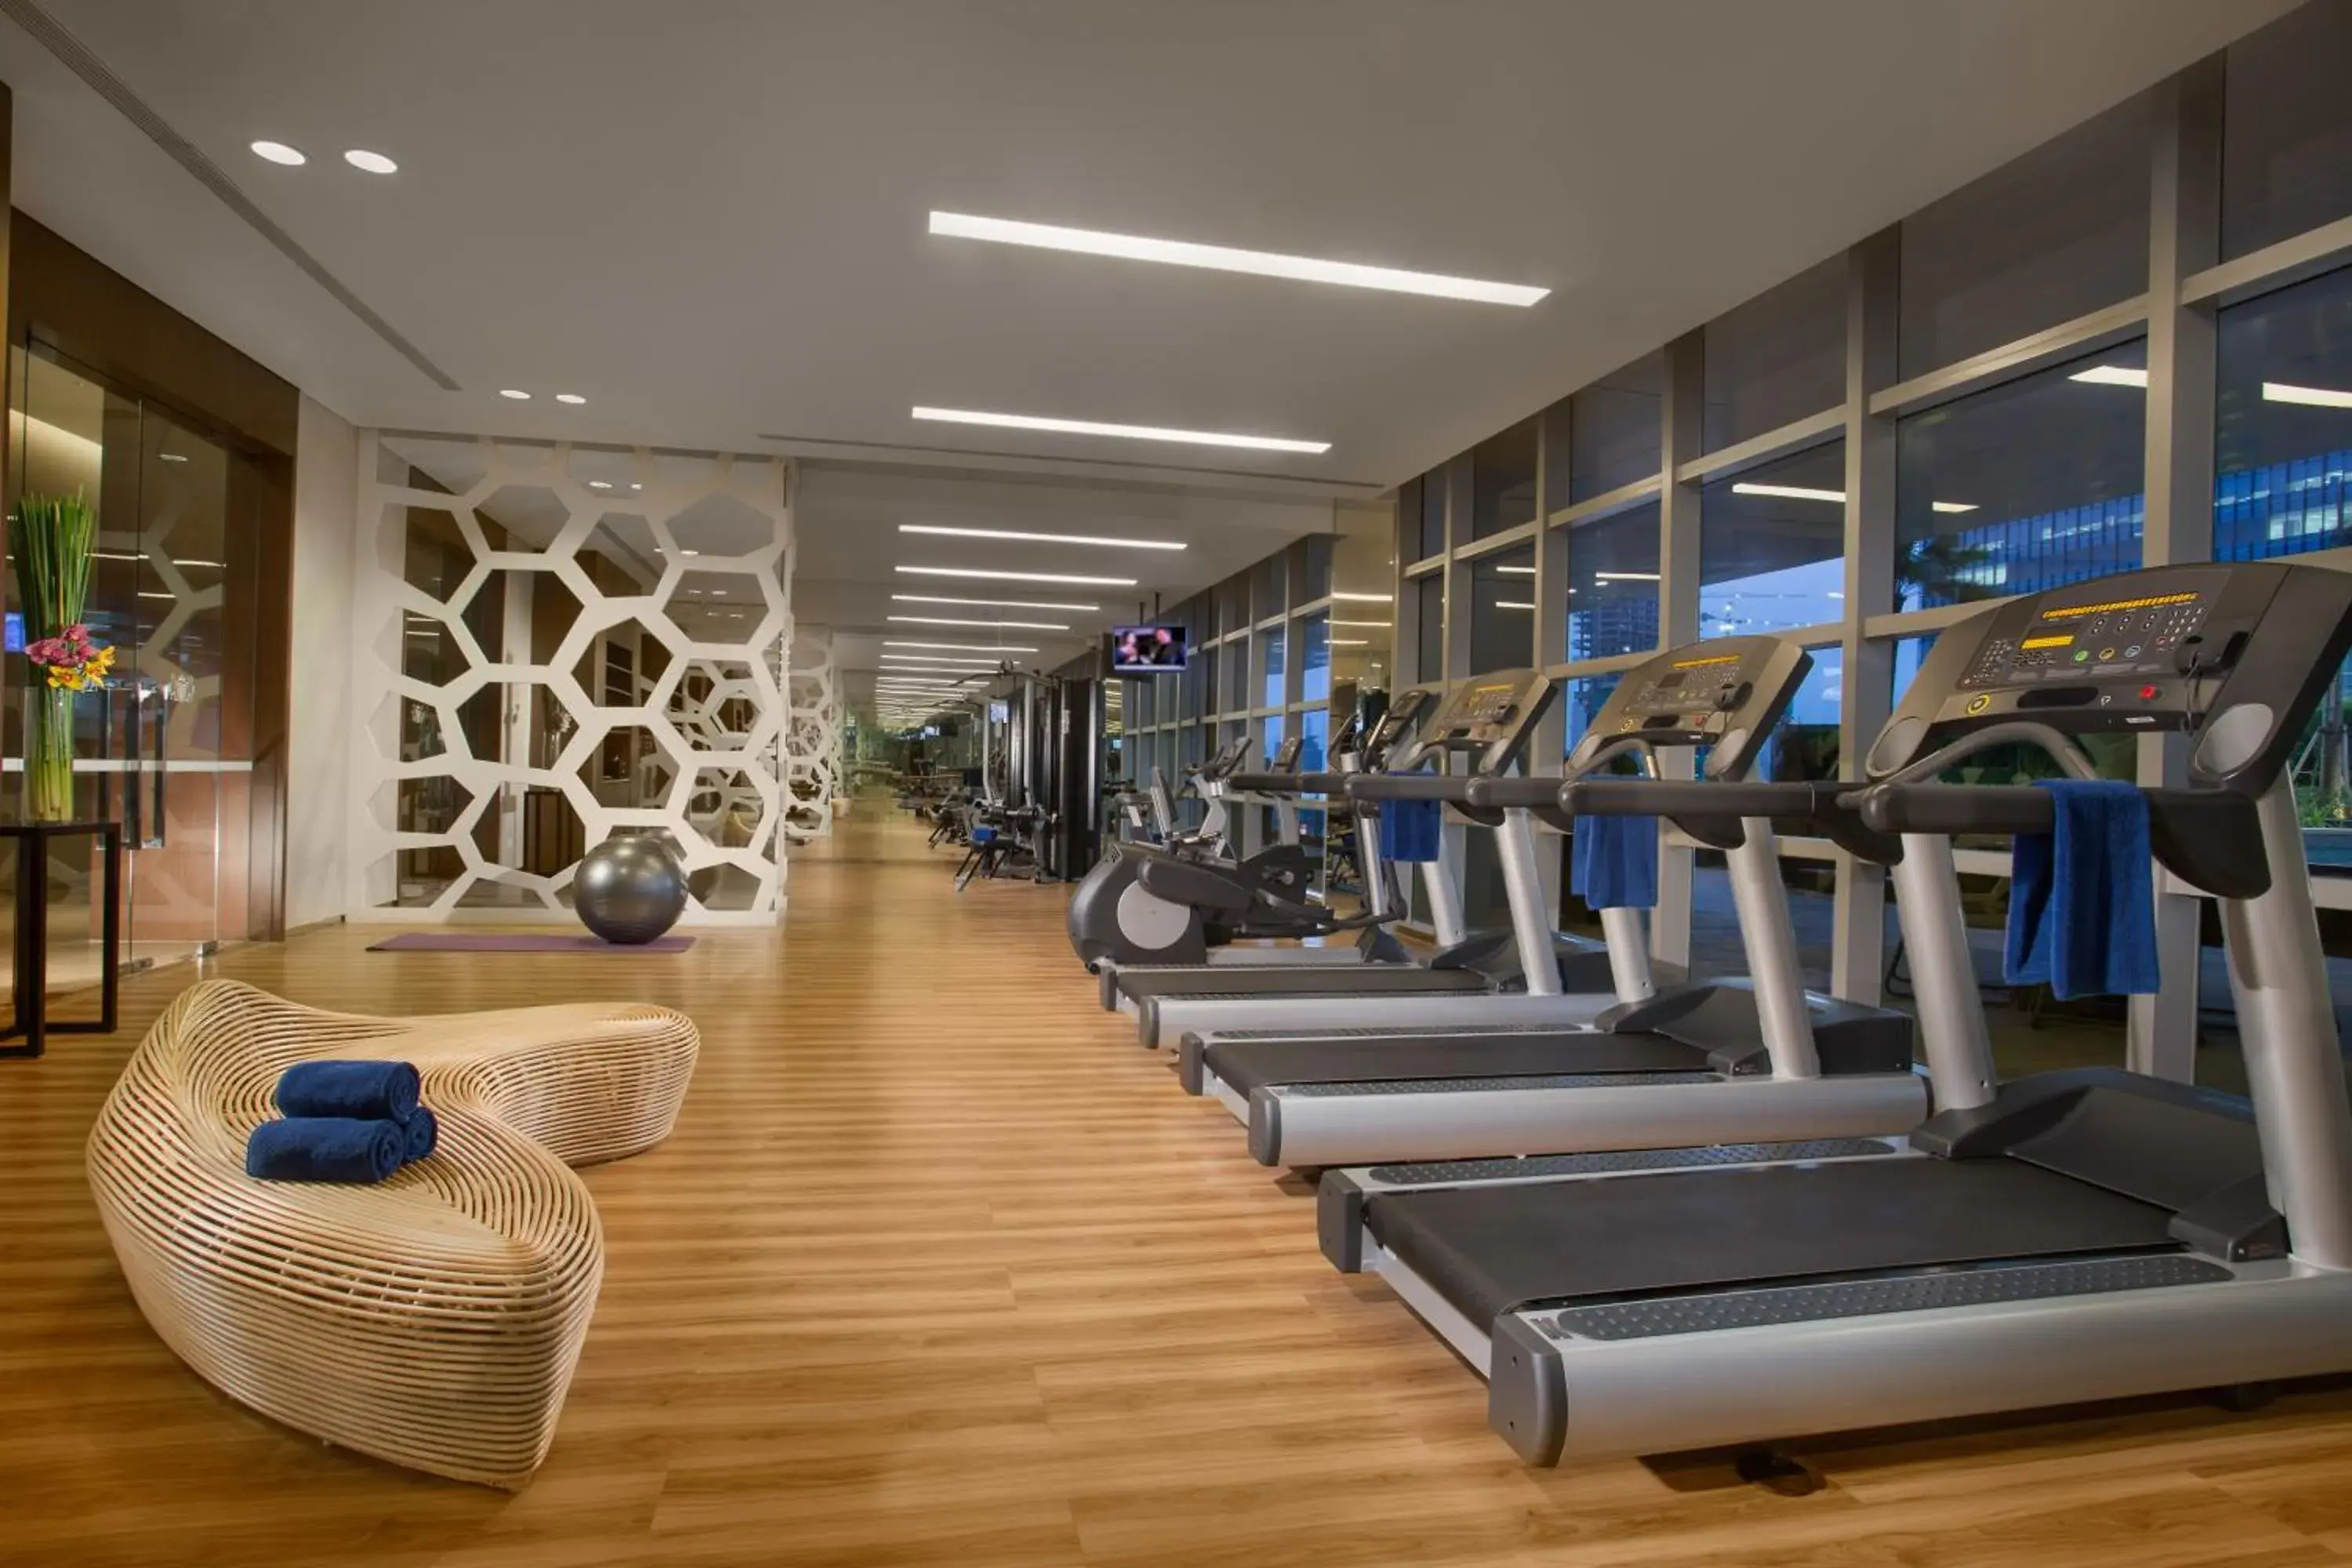 Fitness centre/facilities, Fitness Center/Facilities in Ascott Kuningan Jakarta